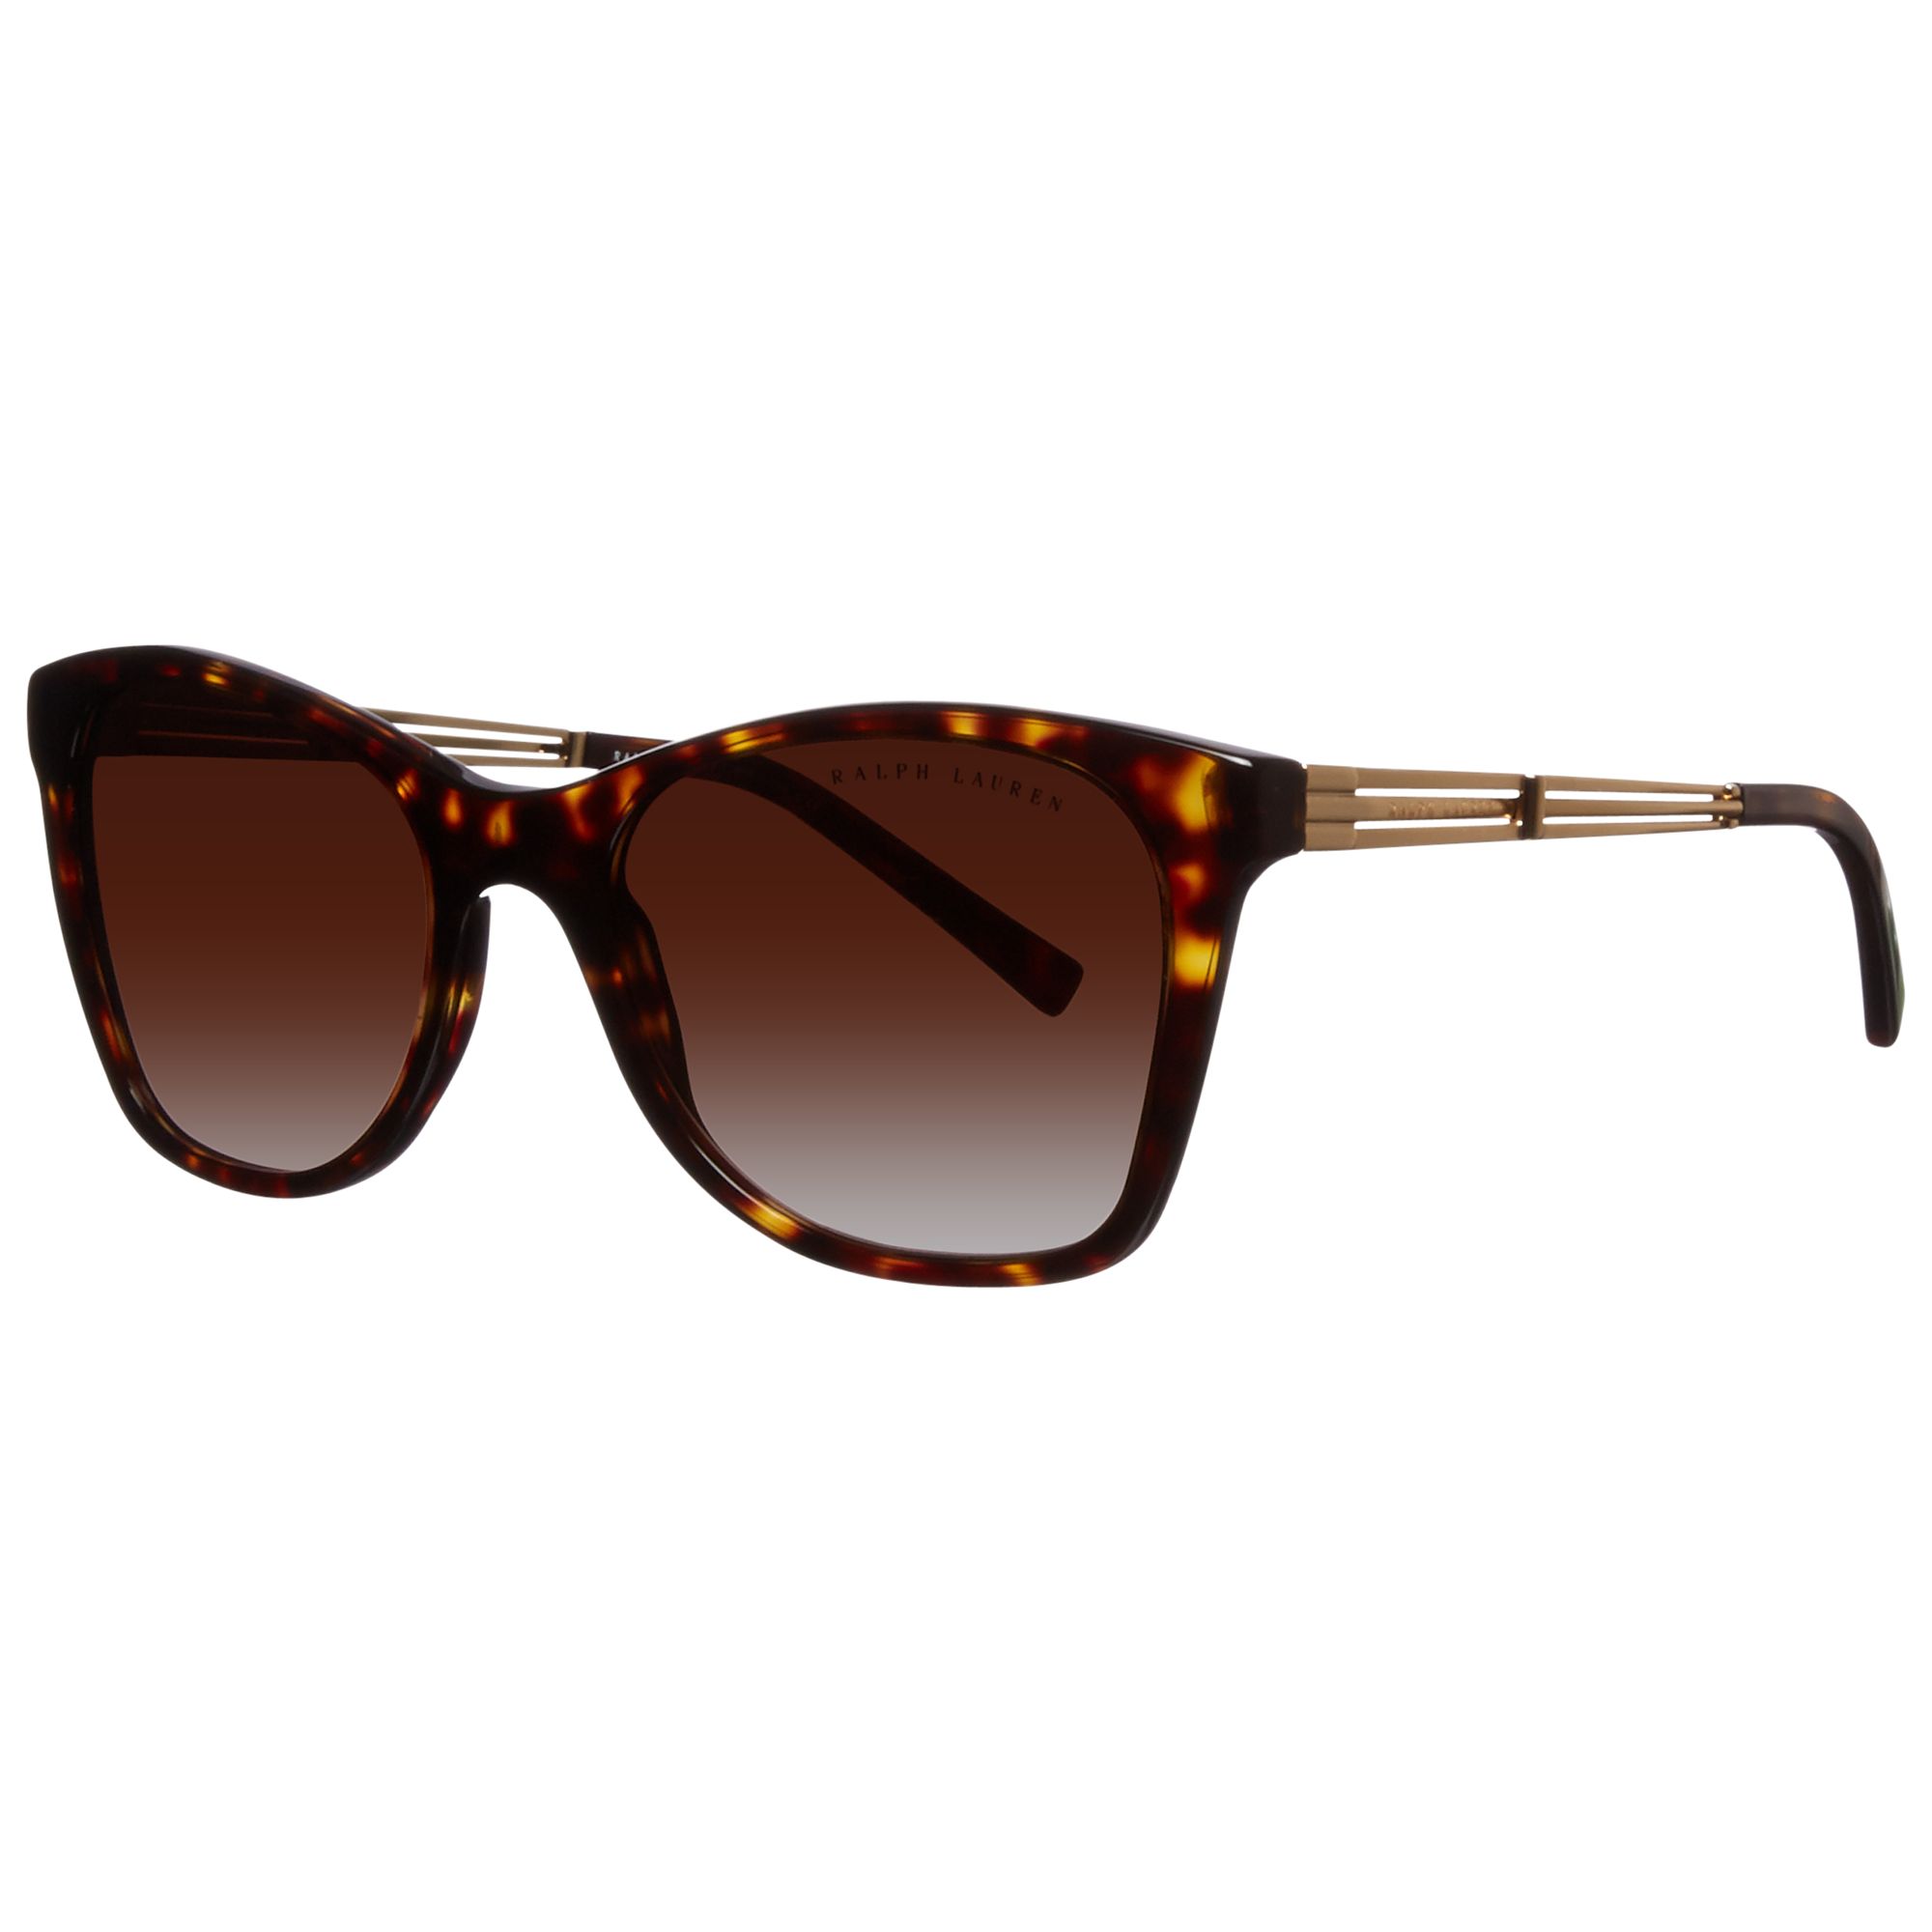 Ralph Lauren RL8113 Cat’s Eye Sunglasses